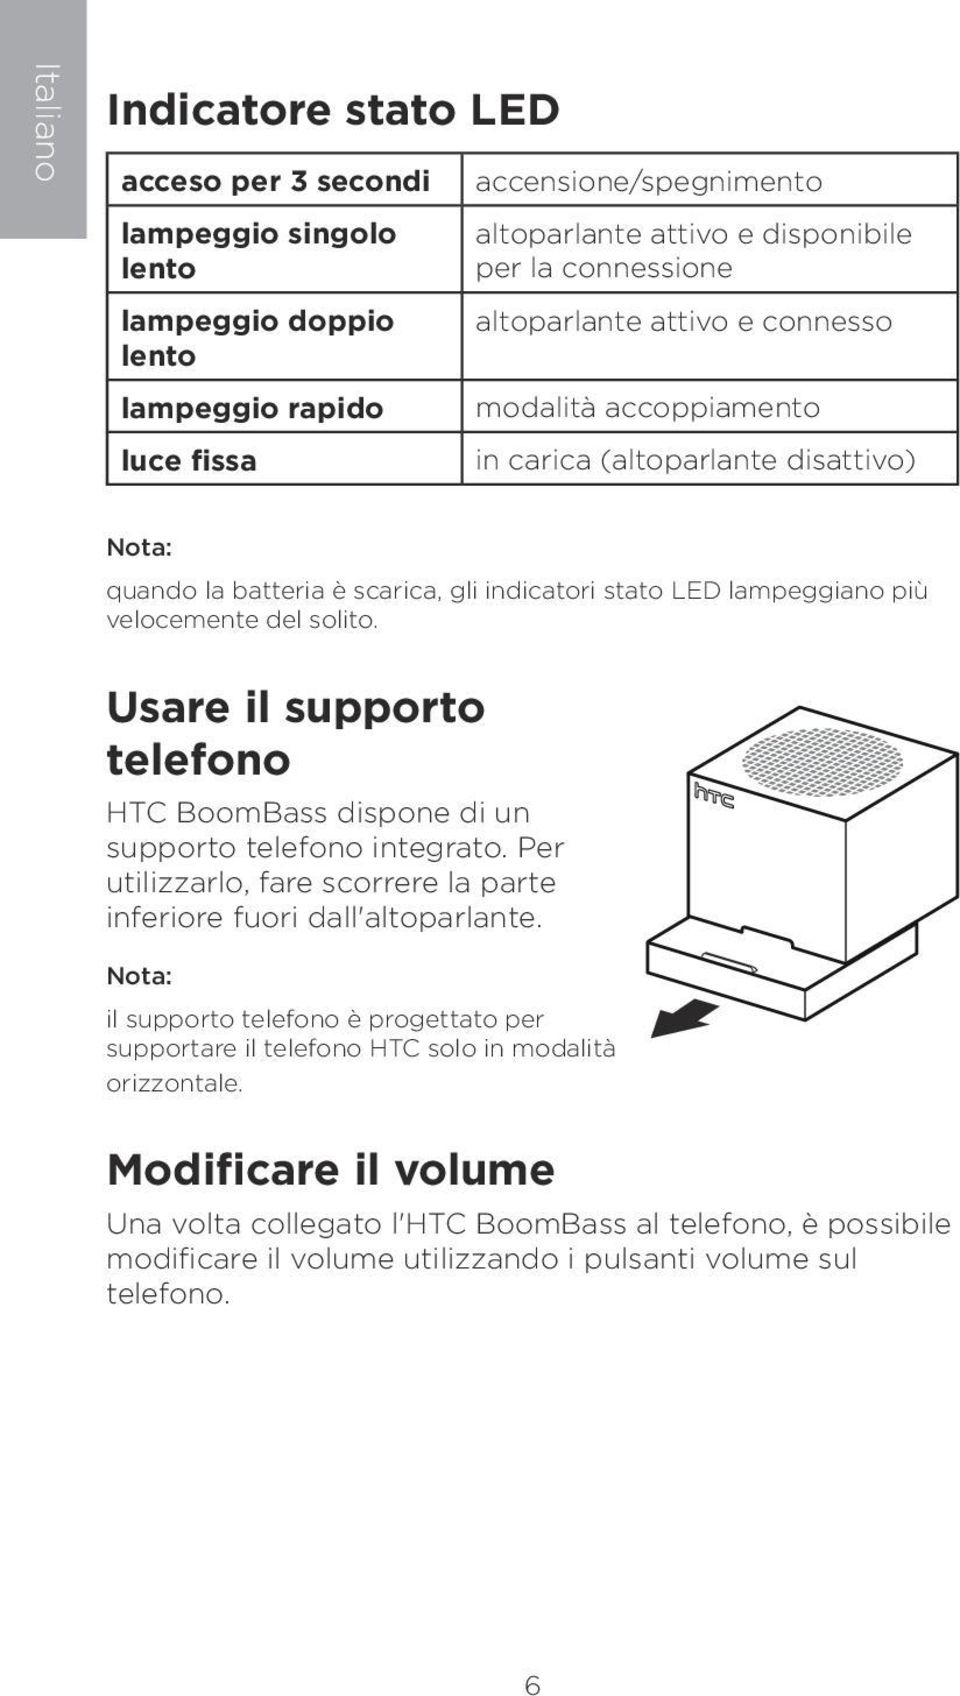 solito. Usare il supporto telefono HTC BoomBass dispone di un supporto telefono integrato. Per utilizzarlo, fare scorrere la parte inferiore fuori dall'altoparlante.